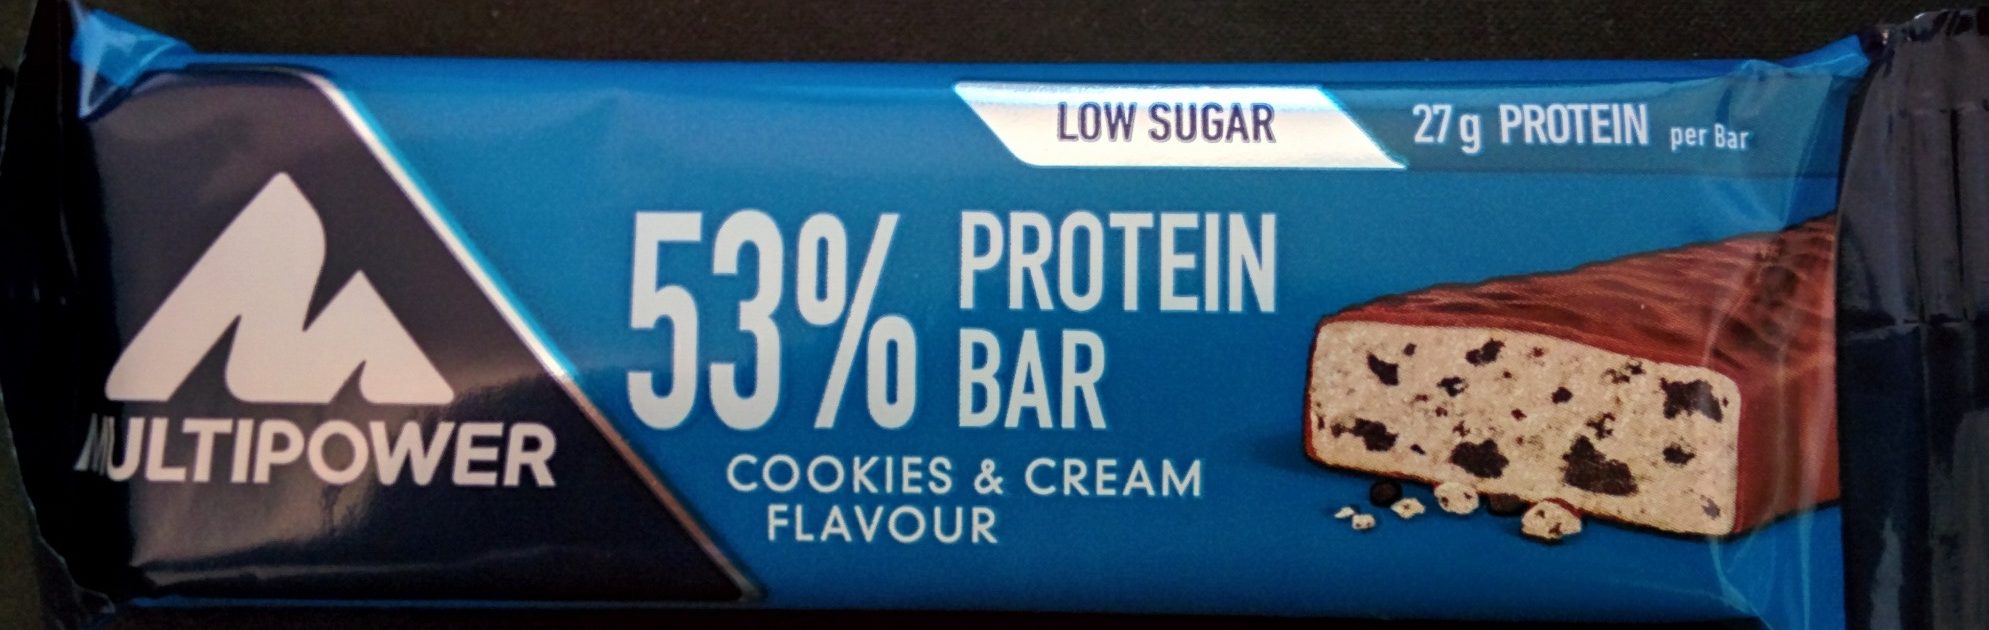 53% Protein Bar Cookies & Cream Flavour - Produkt